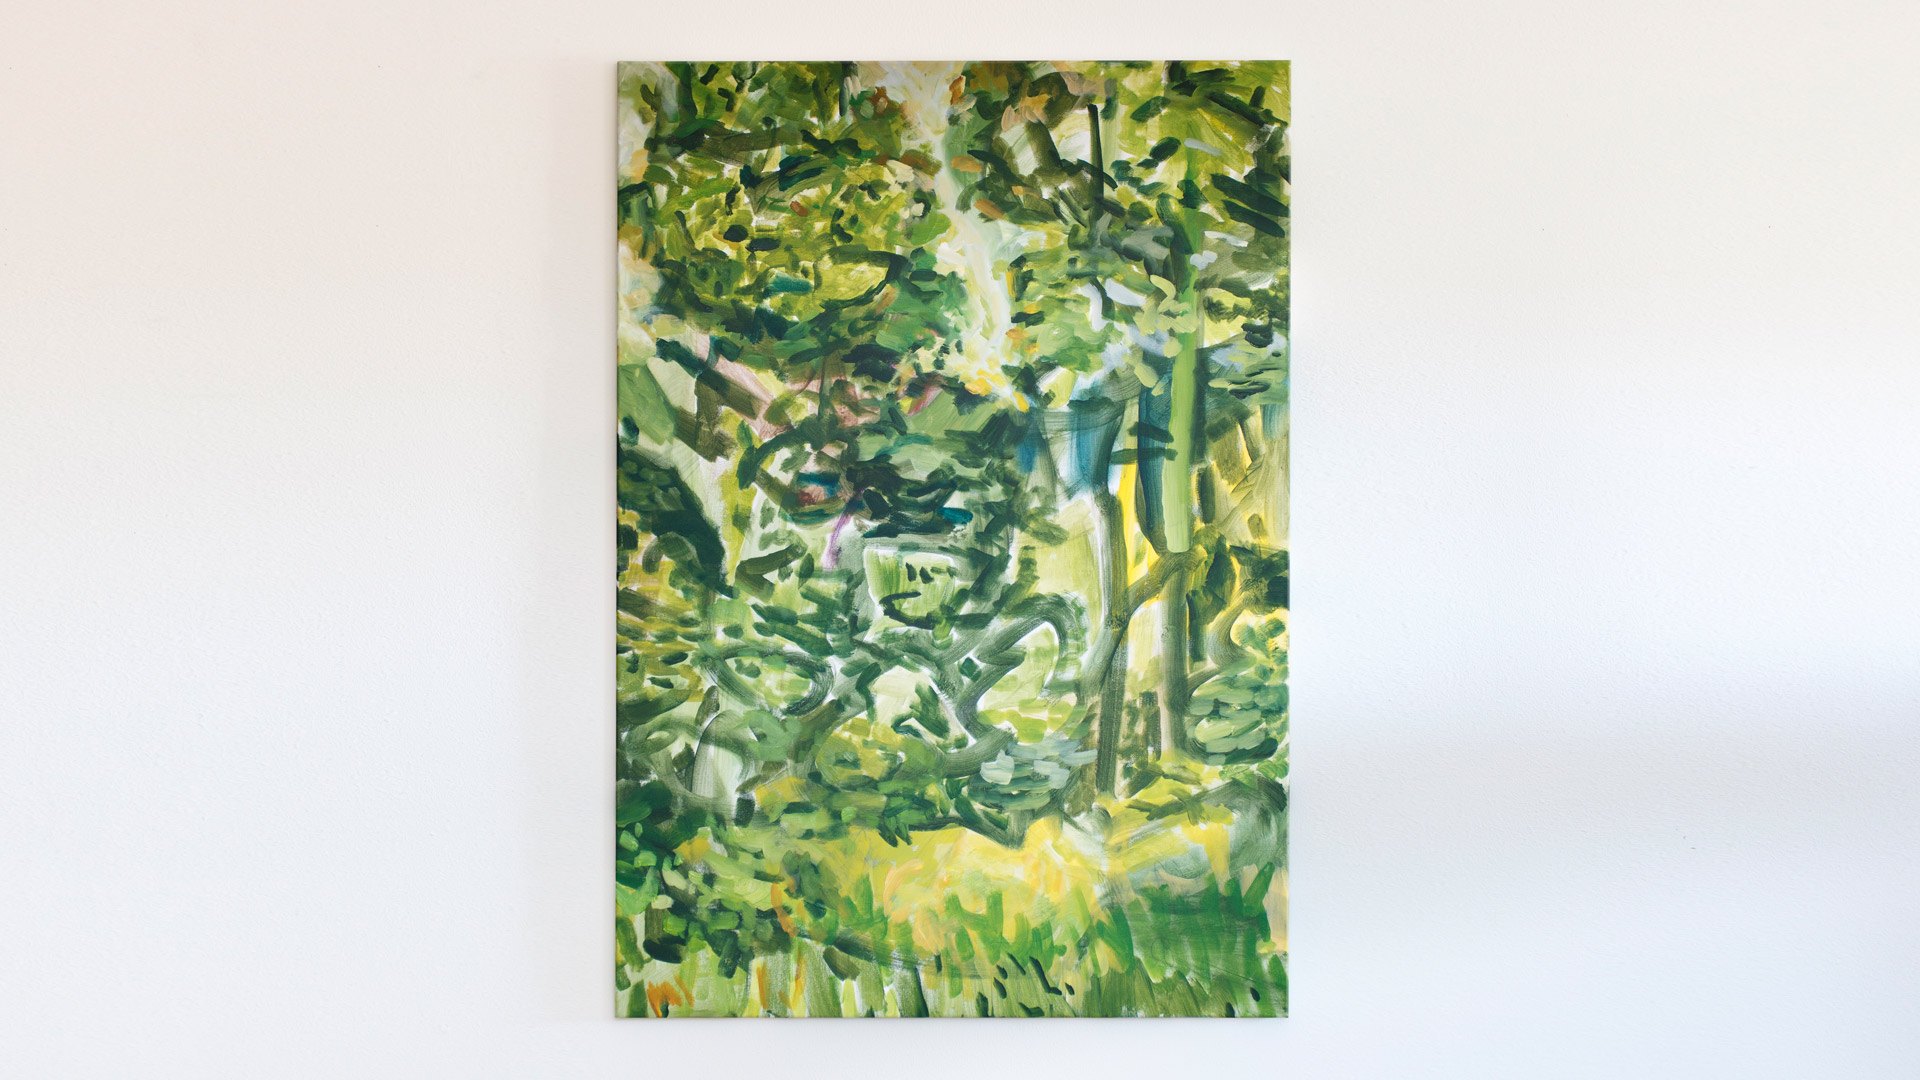 Work in Progress von impressionistischer Biophilia Kunst mit Waldmotiv von der fränkischen Malerin Anja Dommel